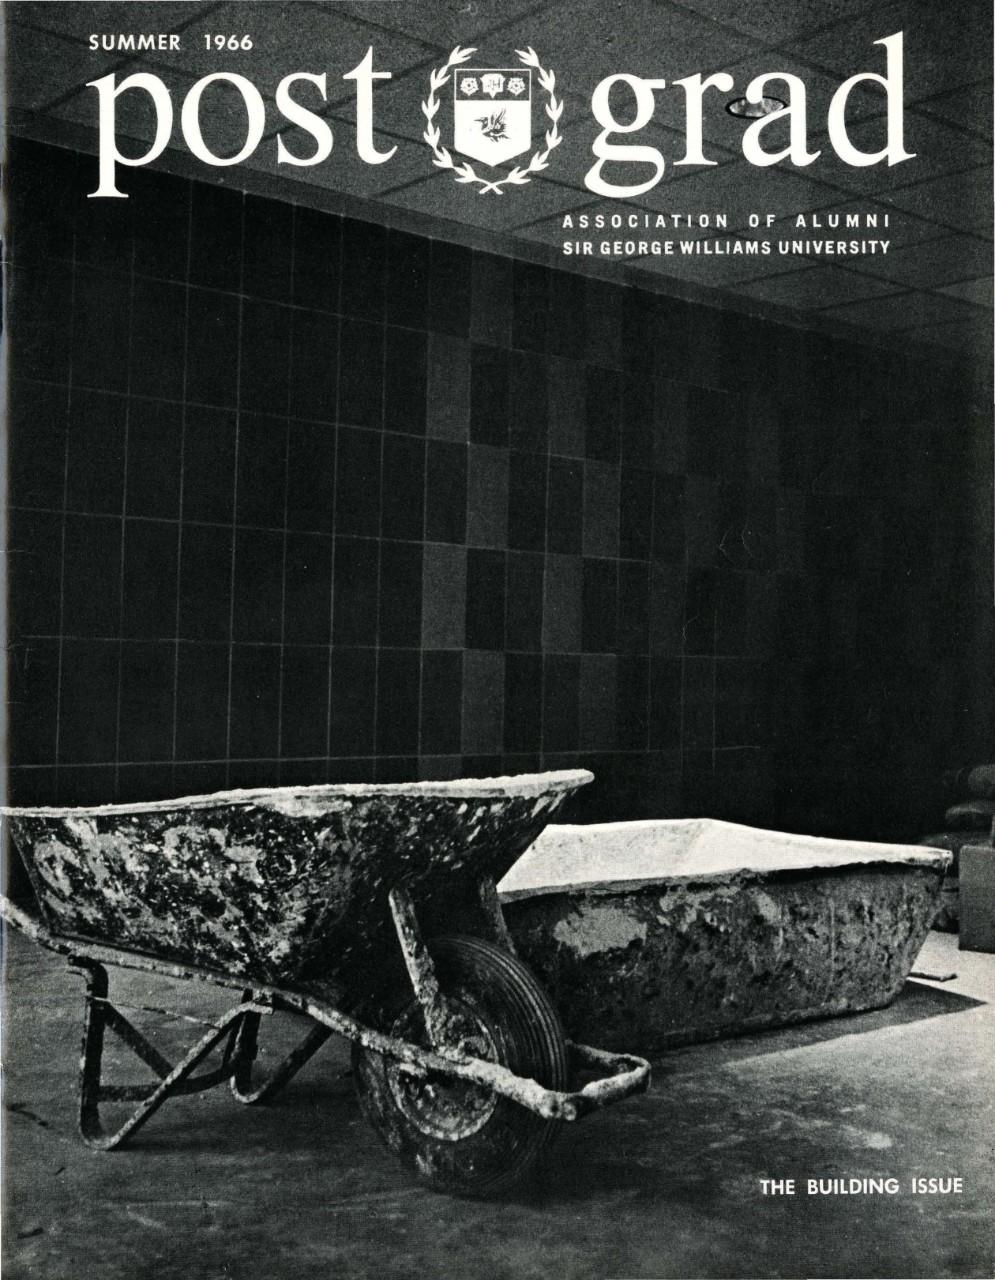 Postgrad, Summer 1966 - The Building Issue